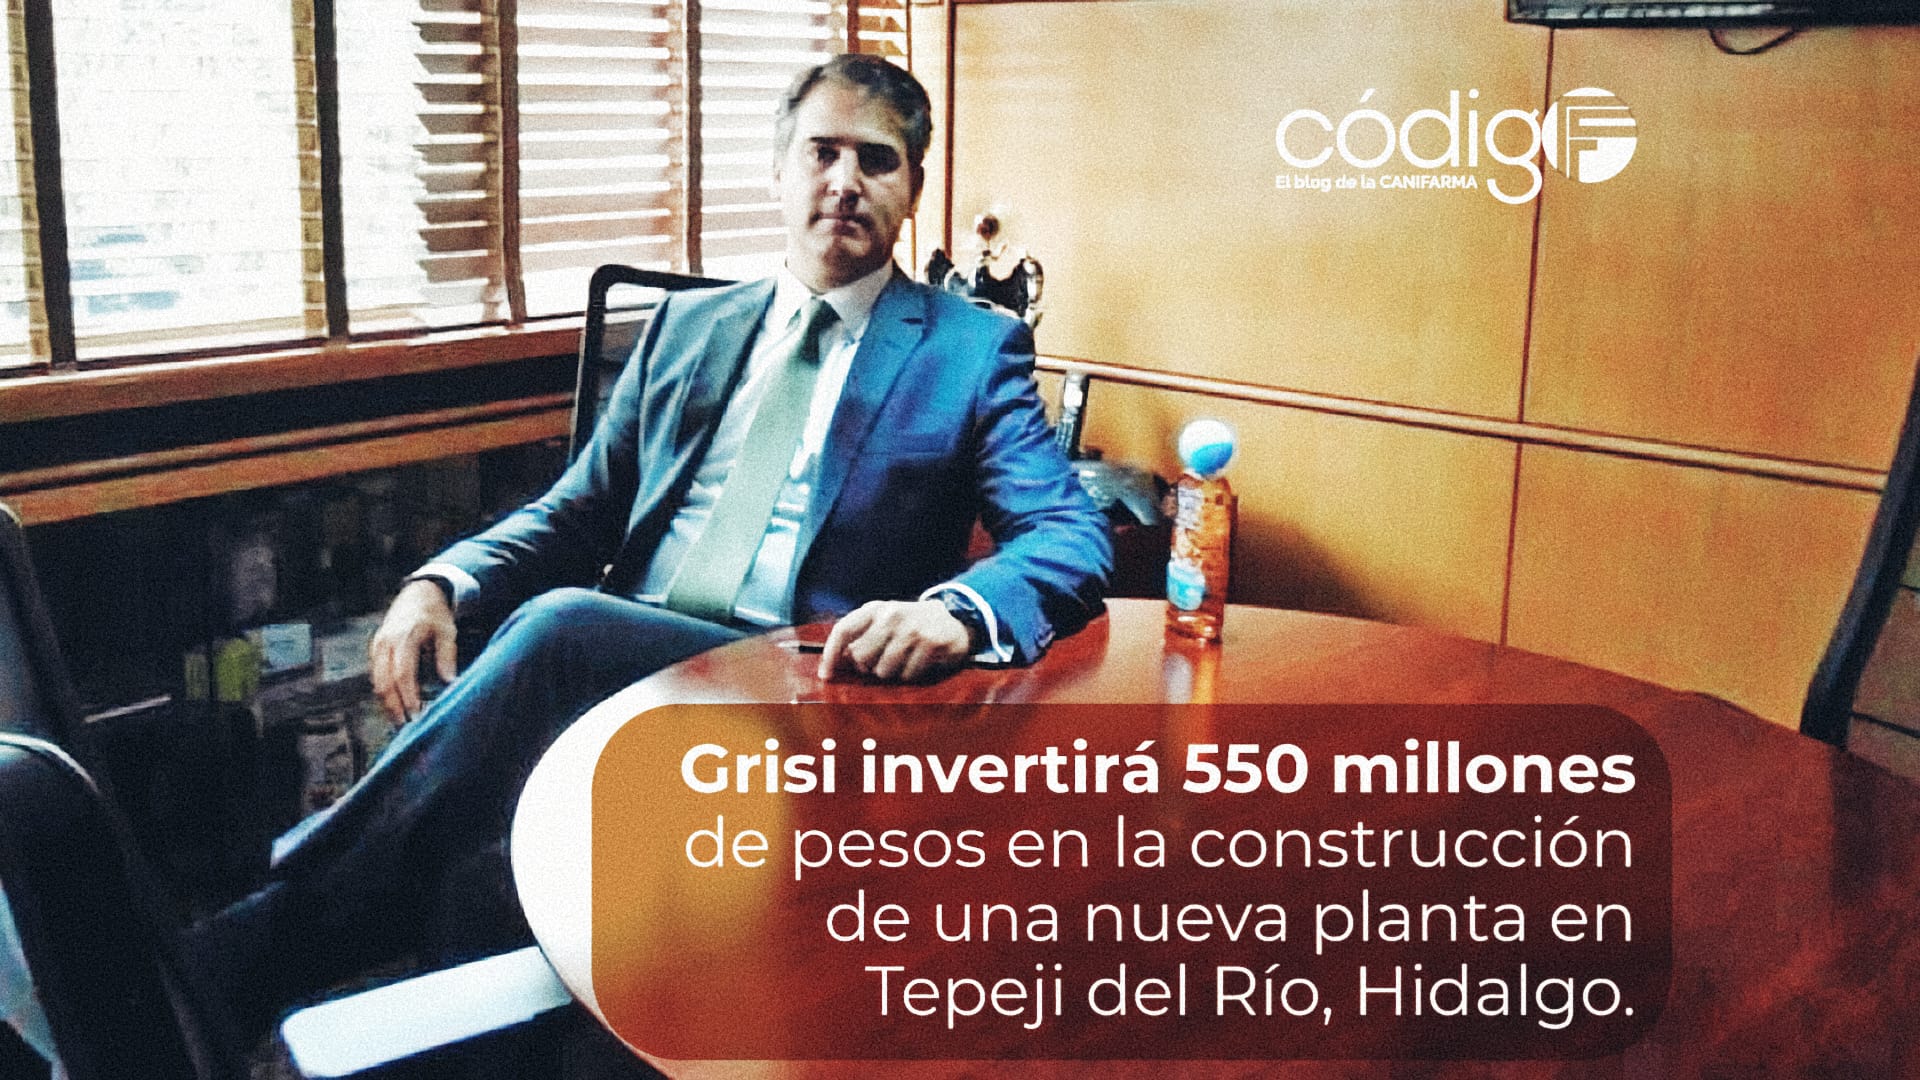 Grisi invertirá 550 millones de pesos en la construcción de una nueva planta en Tepeji del Río, Hidalgo